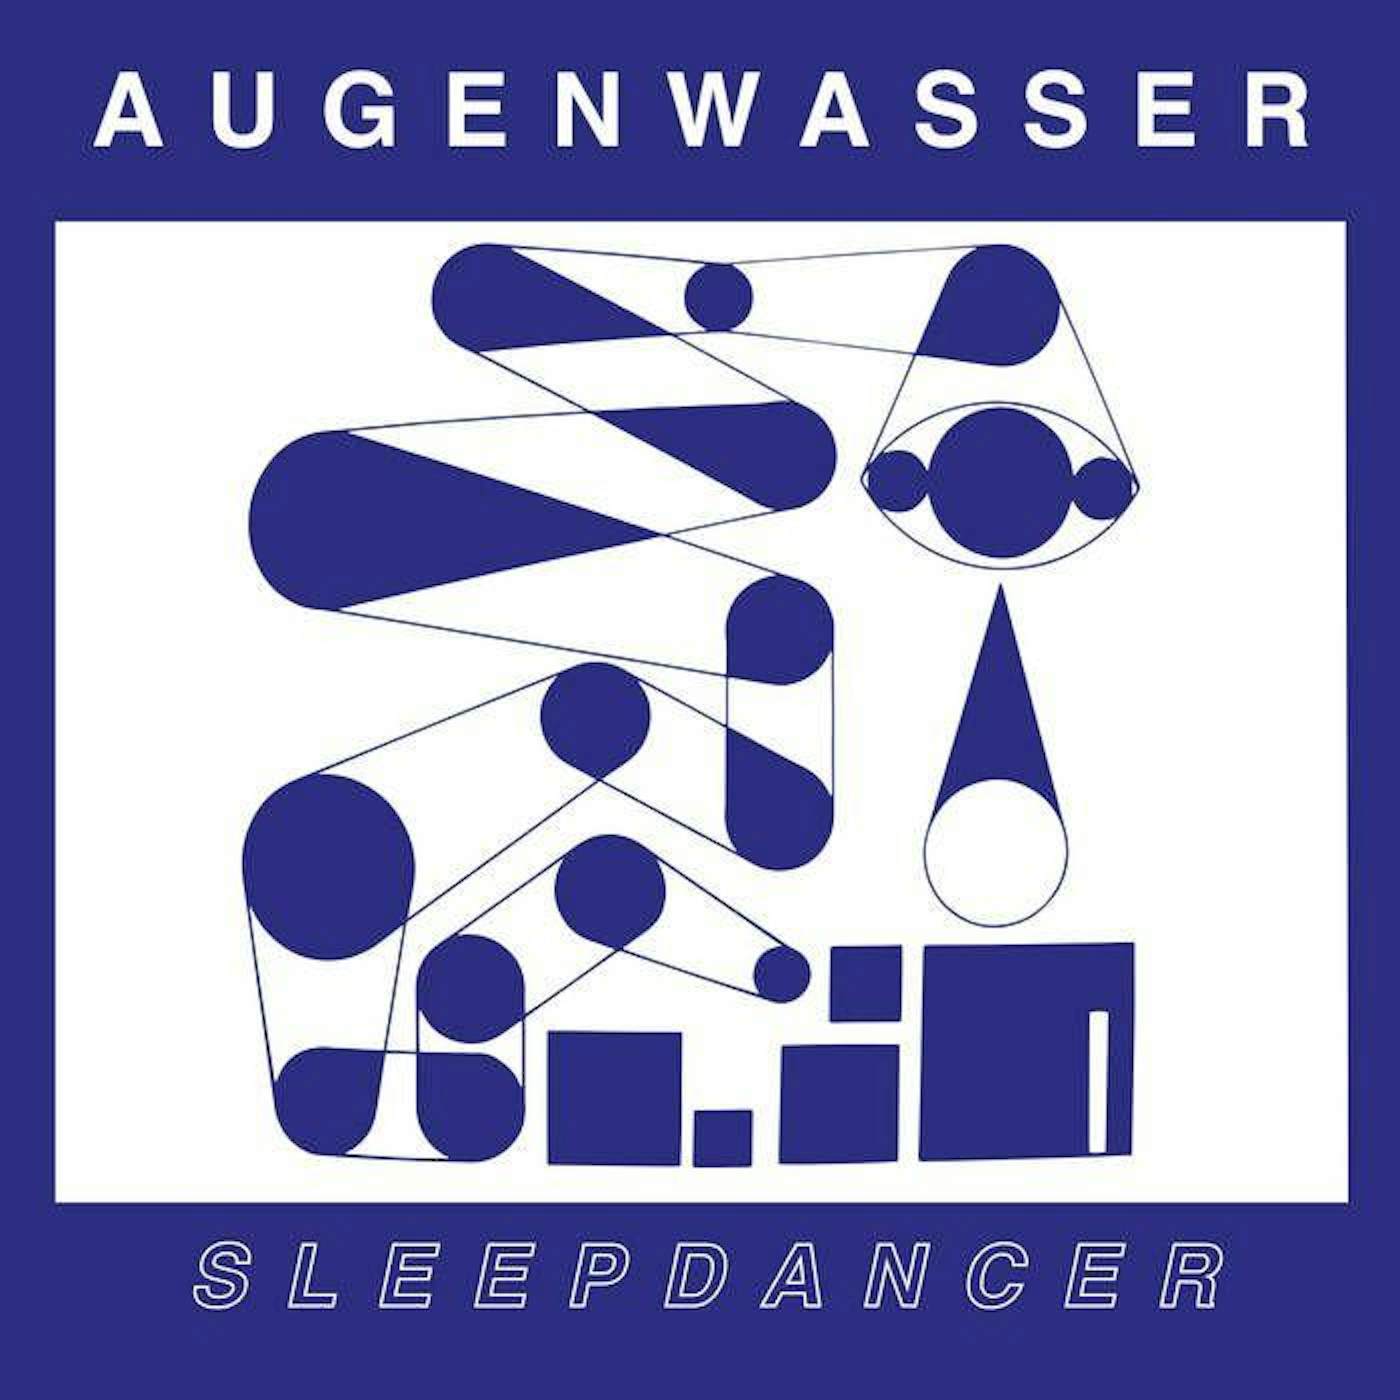 Augenwasser Sleepdancer Vinyl Record